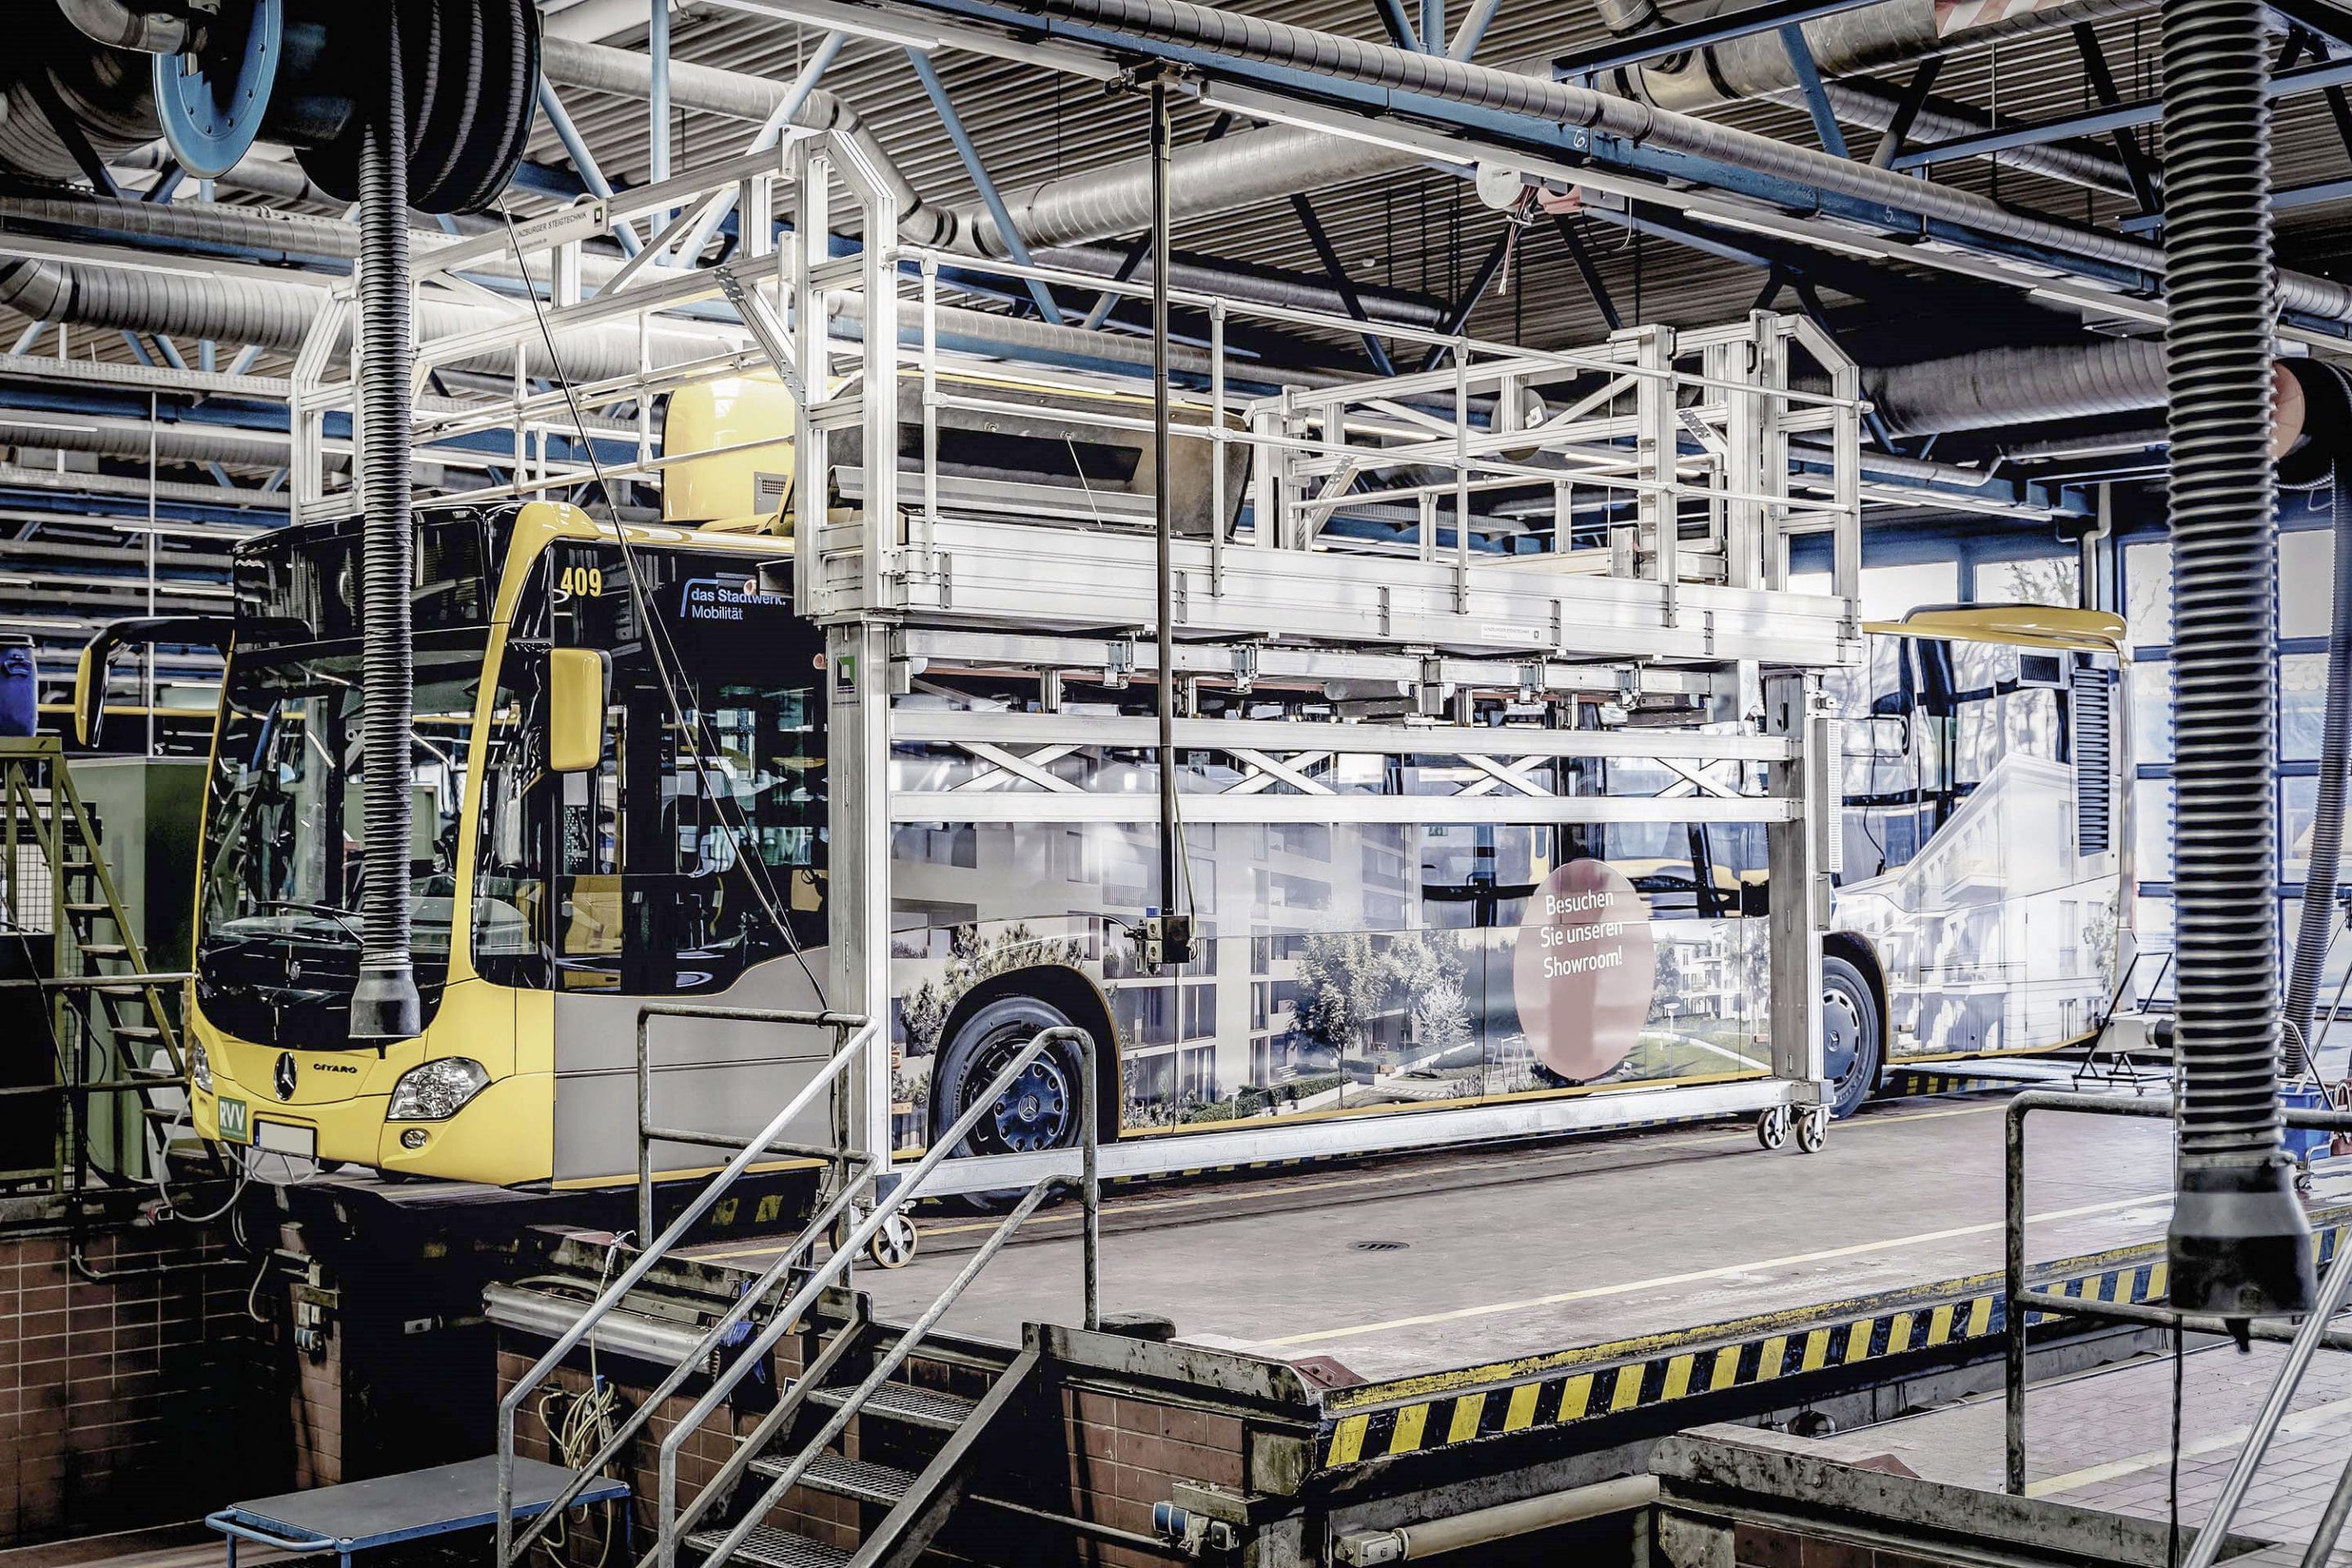 Effiziente Produktion und Wartung von Bussen  – Günzburger Steigtechnik präsentiert auf der Bus2Bus 2019 in Berlin innovative Steigtechnikanlagen für die Busindustrie